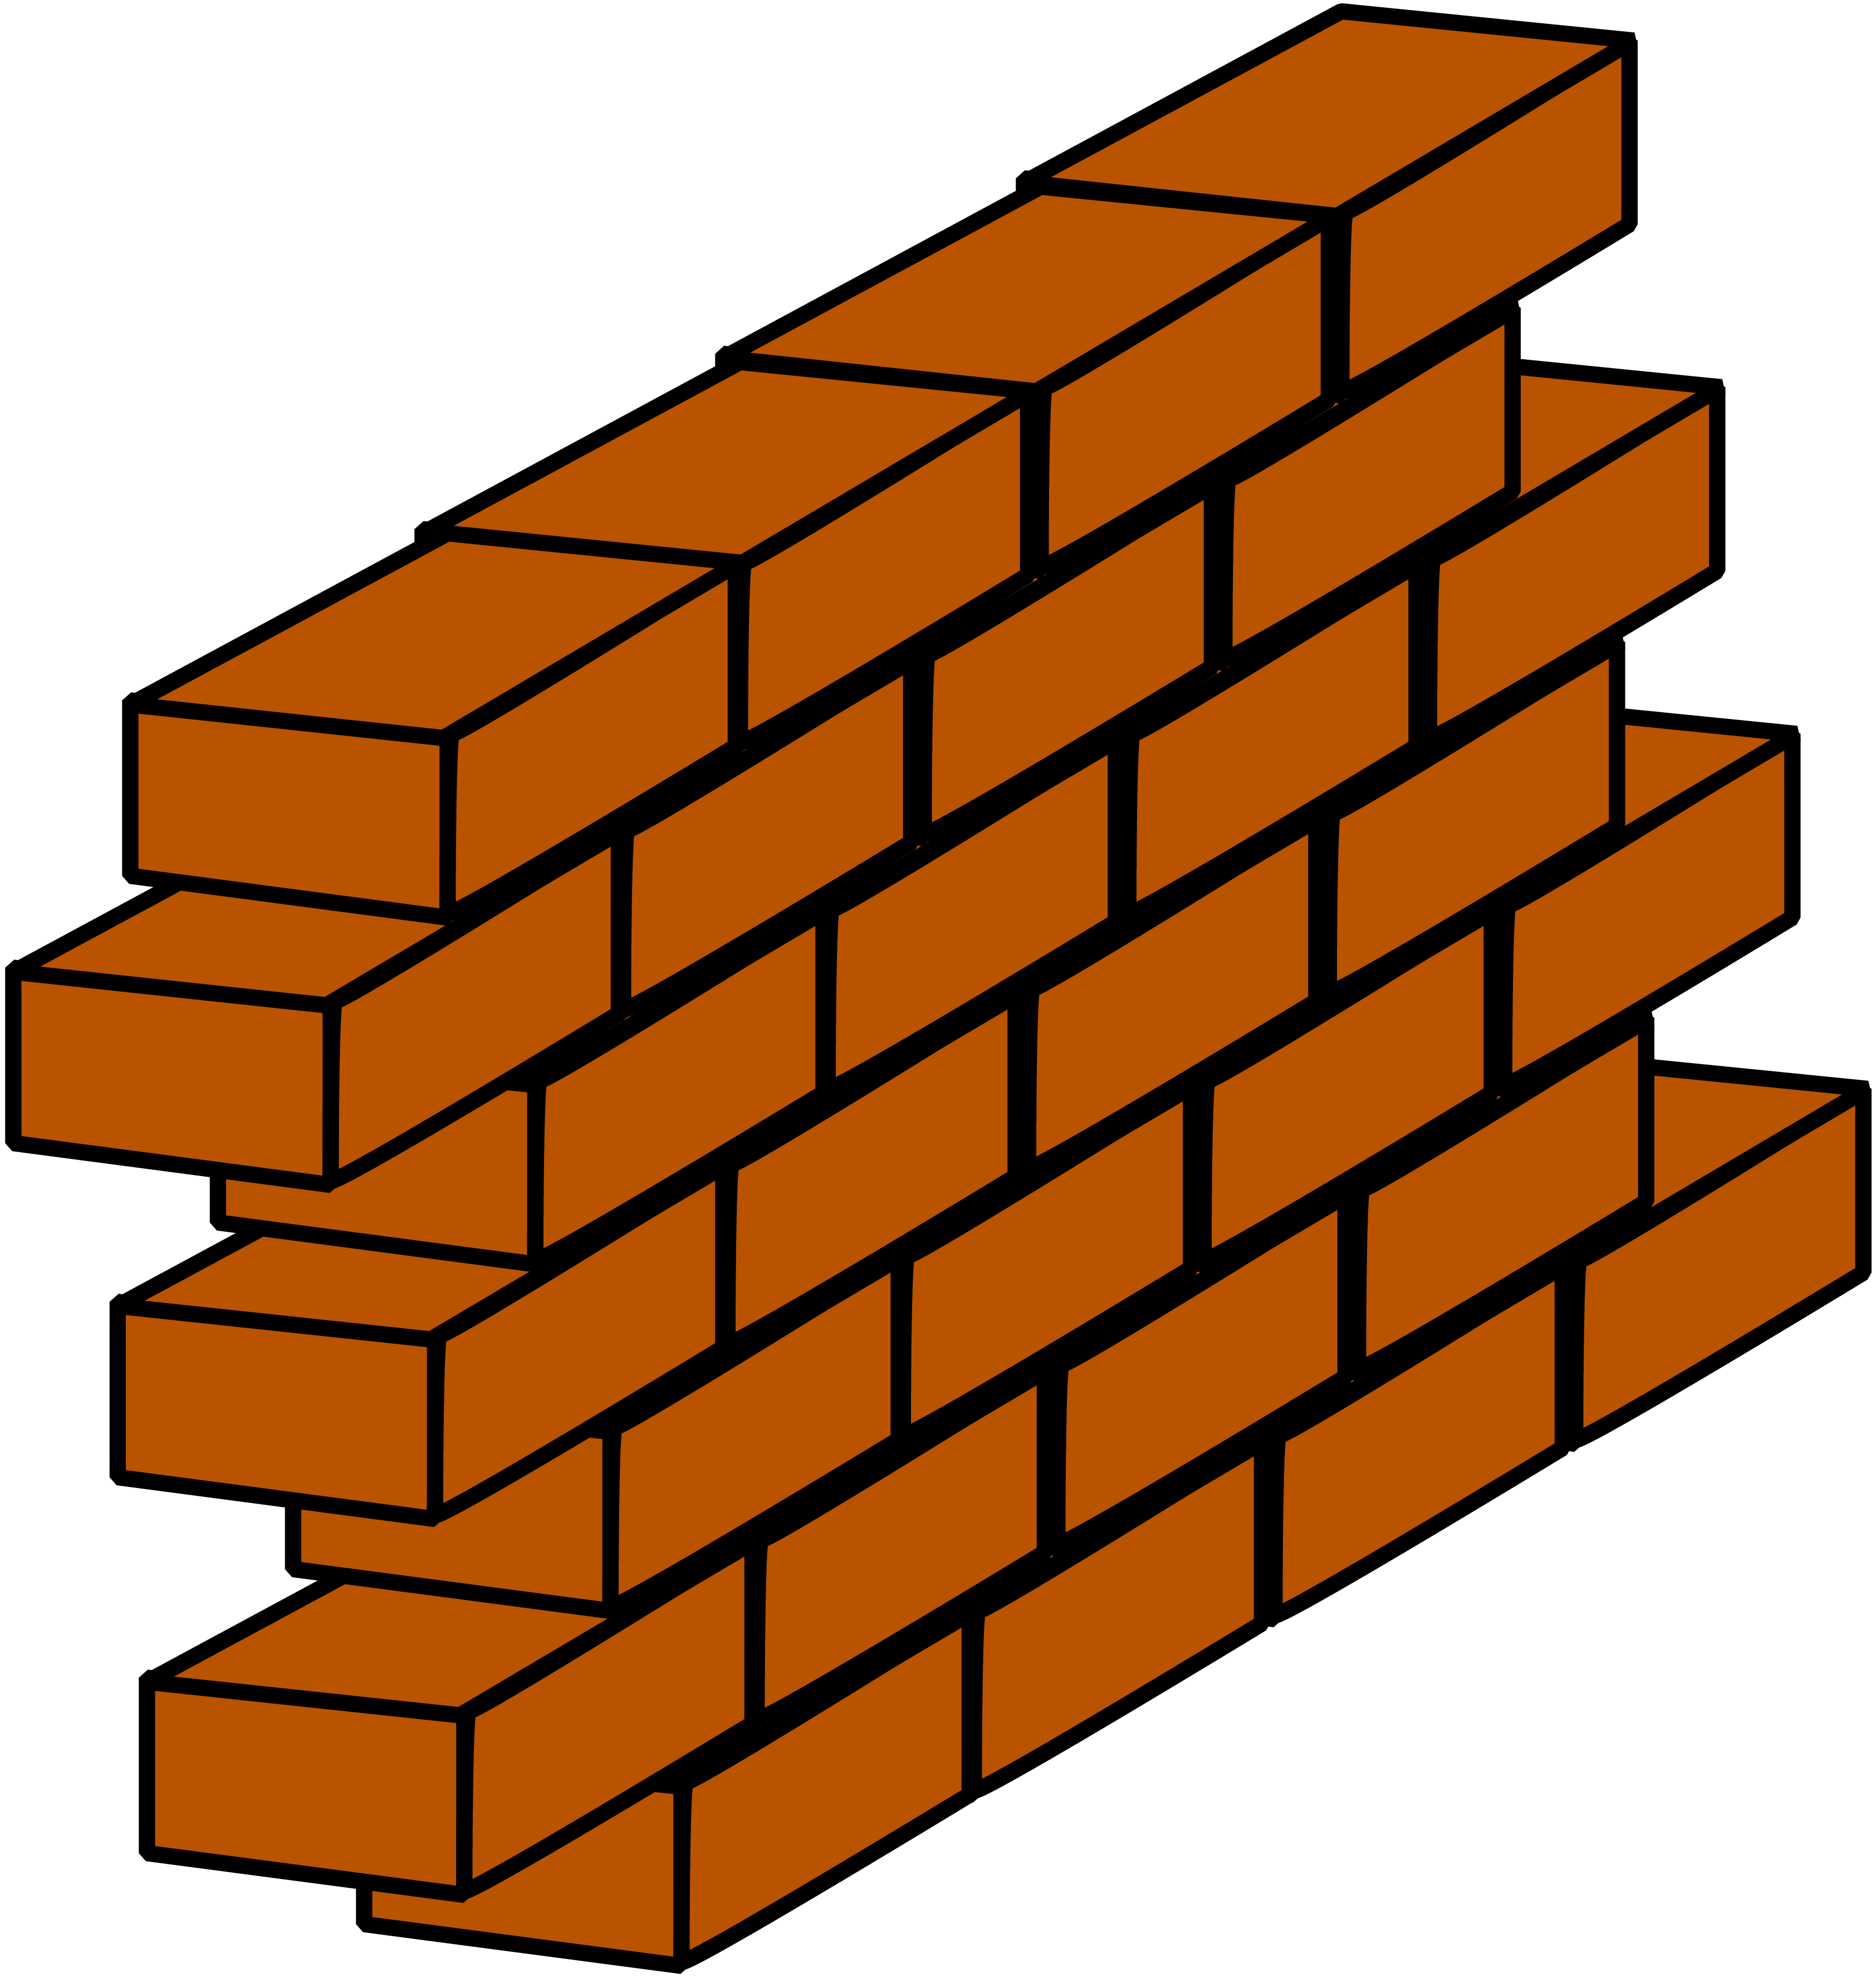 Bricks Clipart-Clipartlook.com-3369